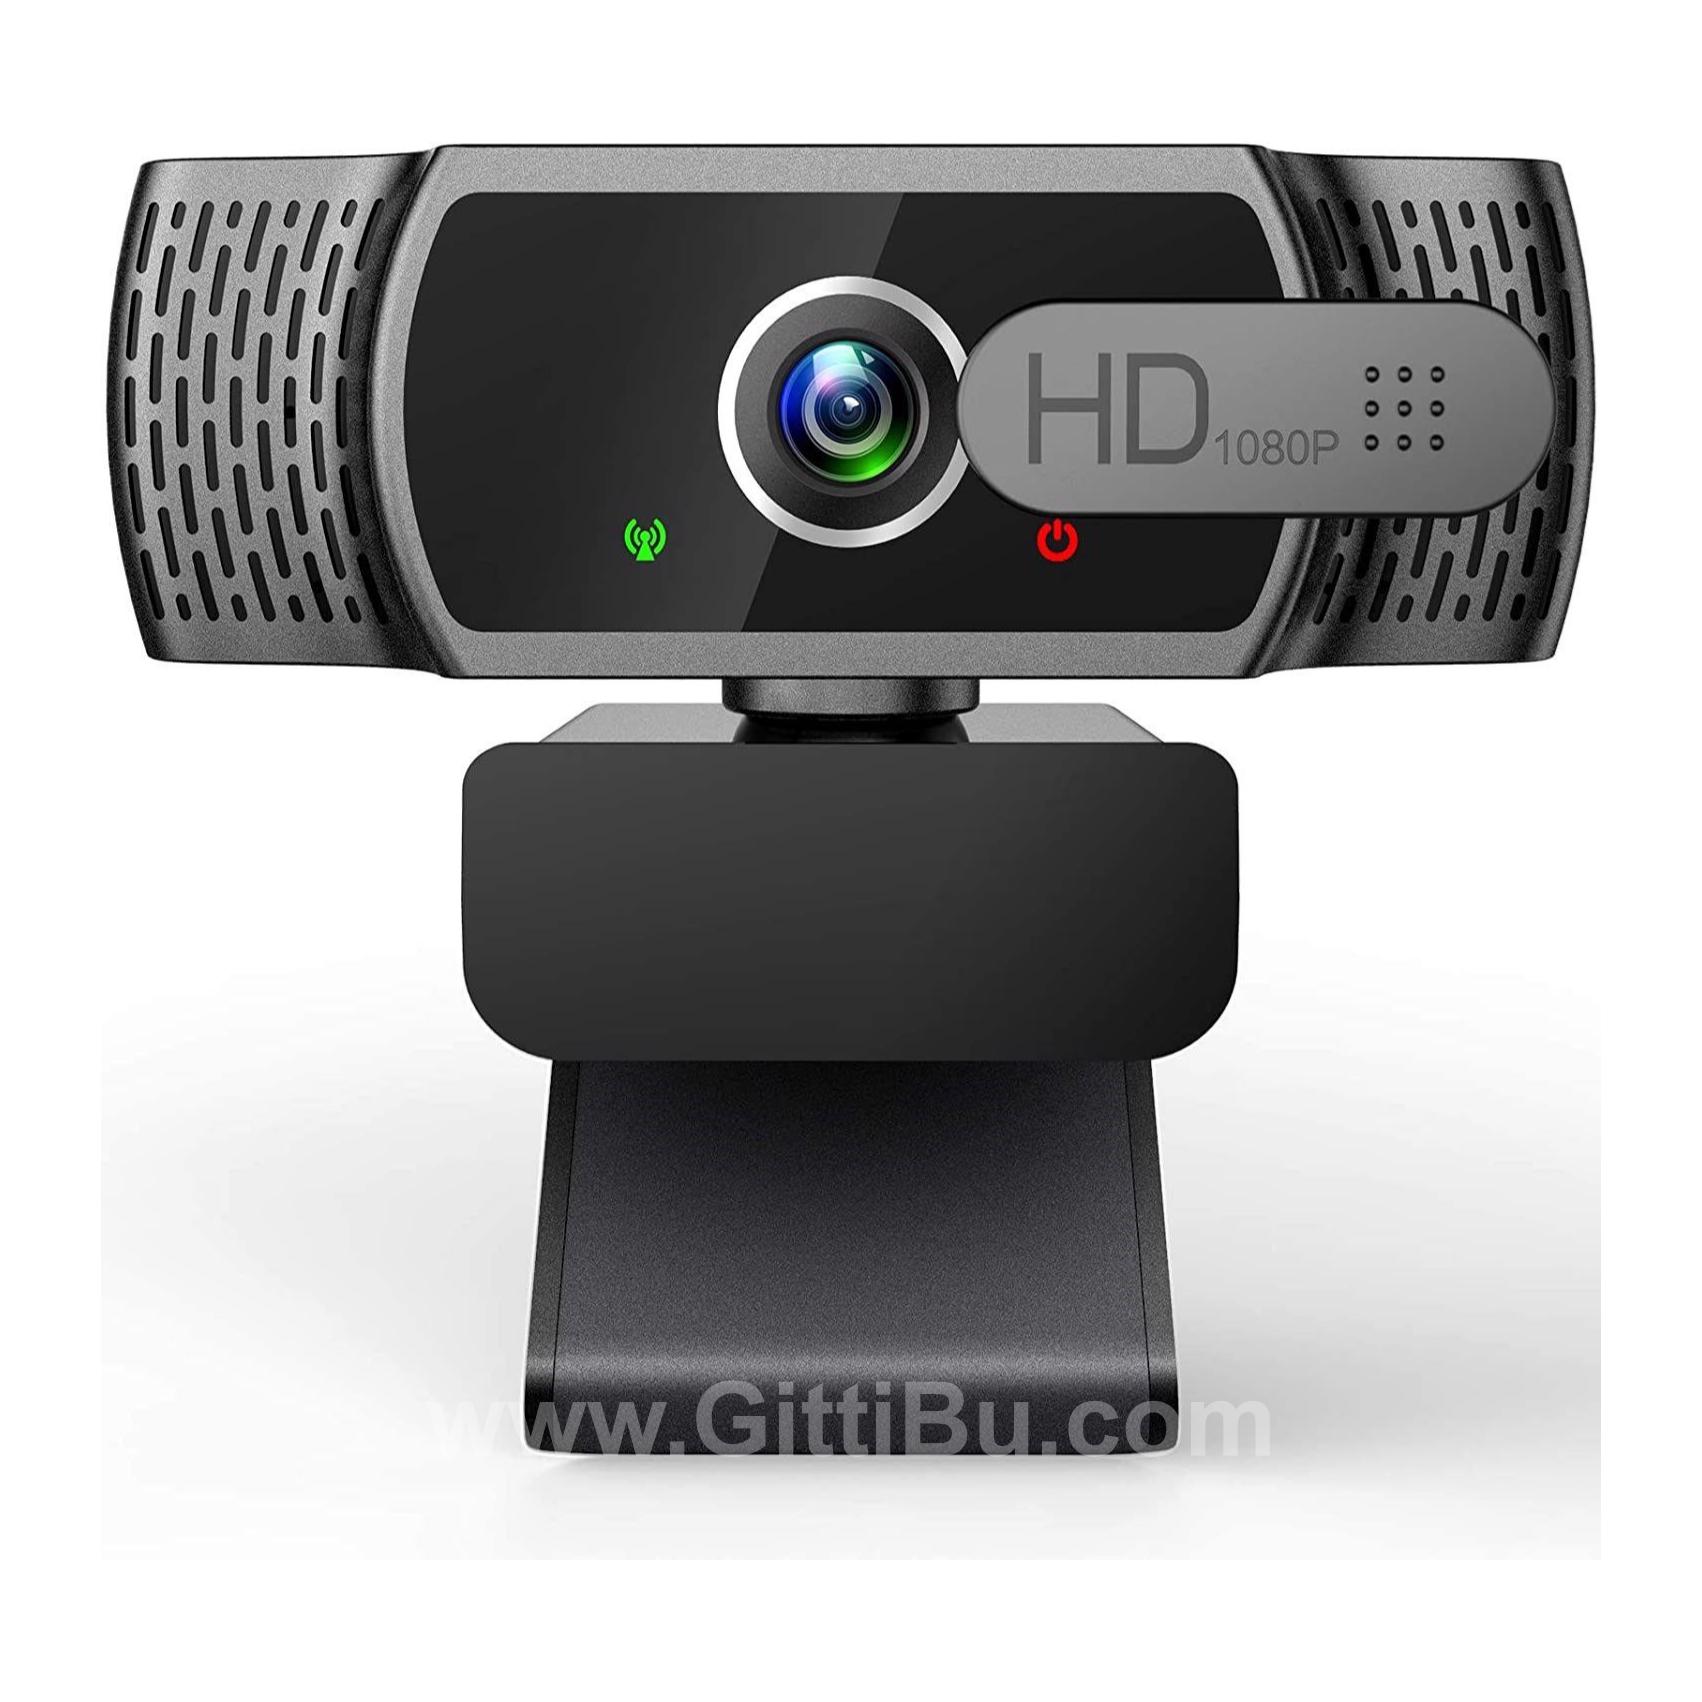 Corlitec Mikrofonlu 1080 P Webcam -  Zoom